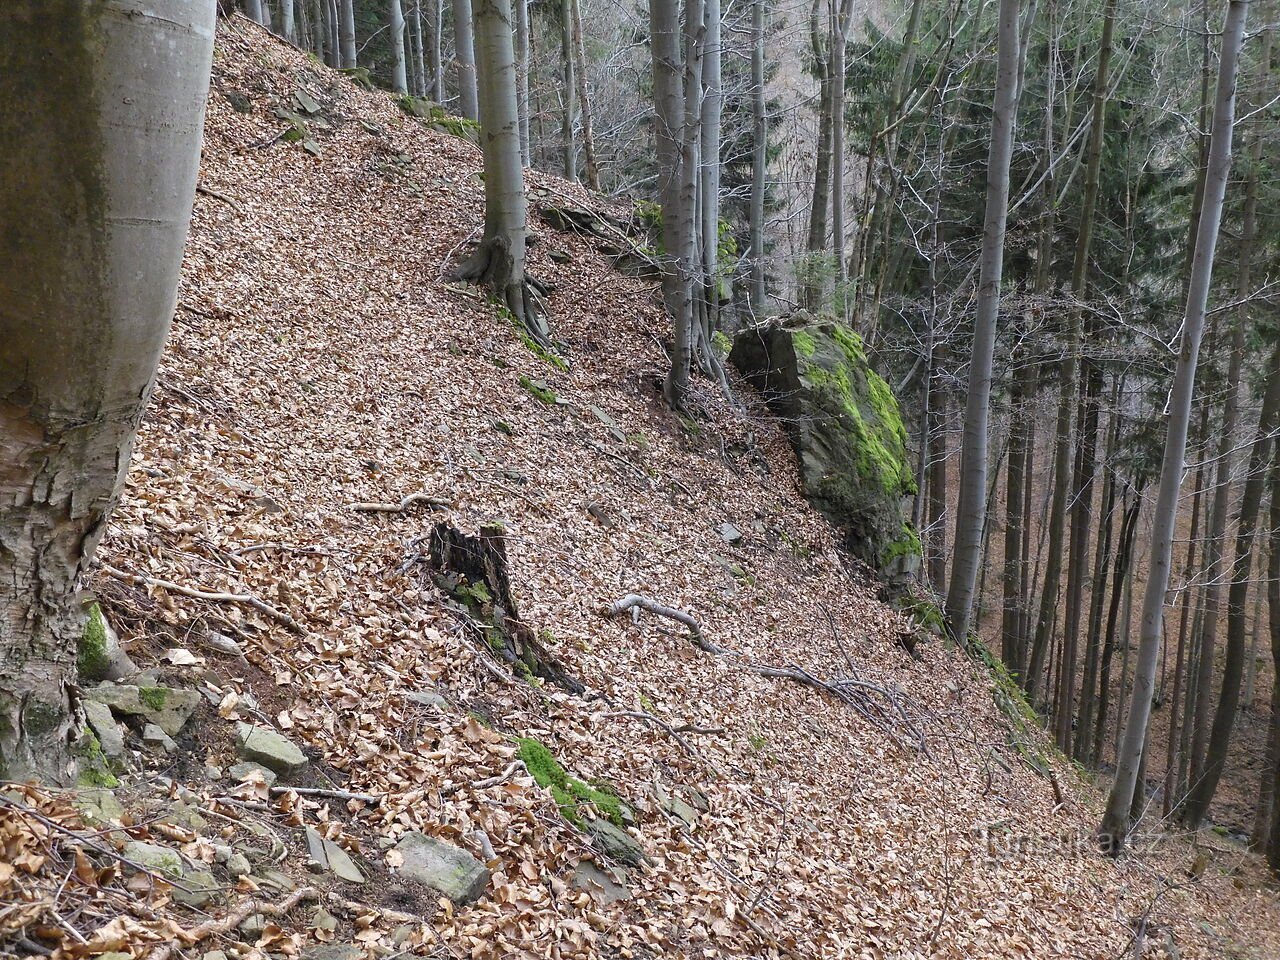 Formațiuni interesante de stâncă și piatră la nord de creasta Sulov - Mosty u Jablunkova, partea 4.